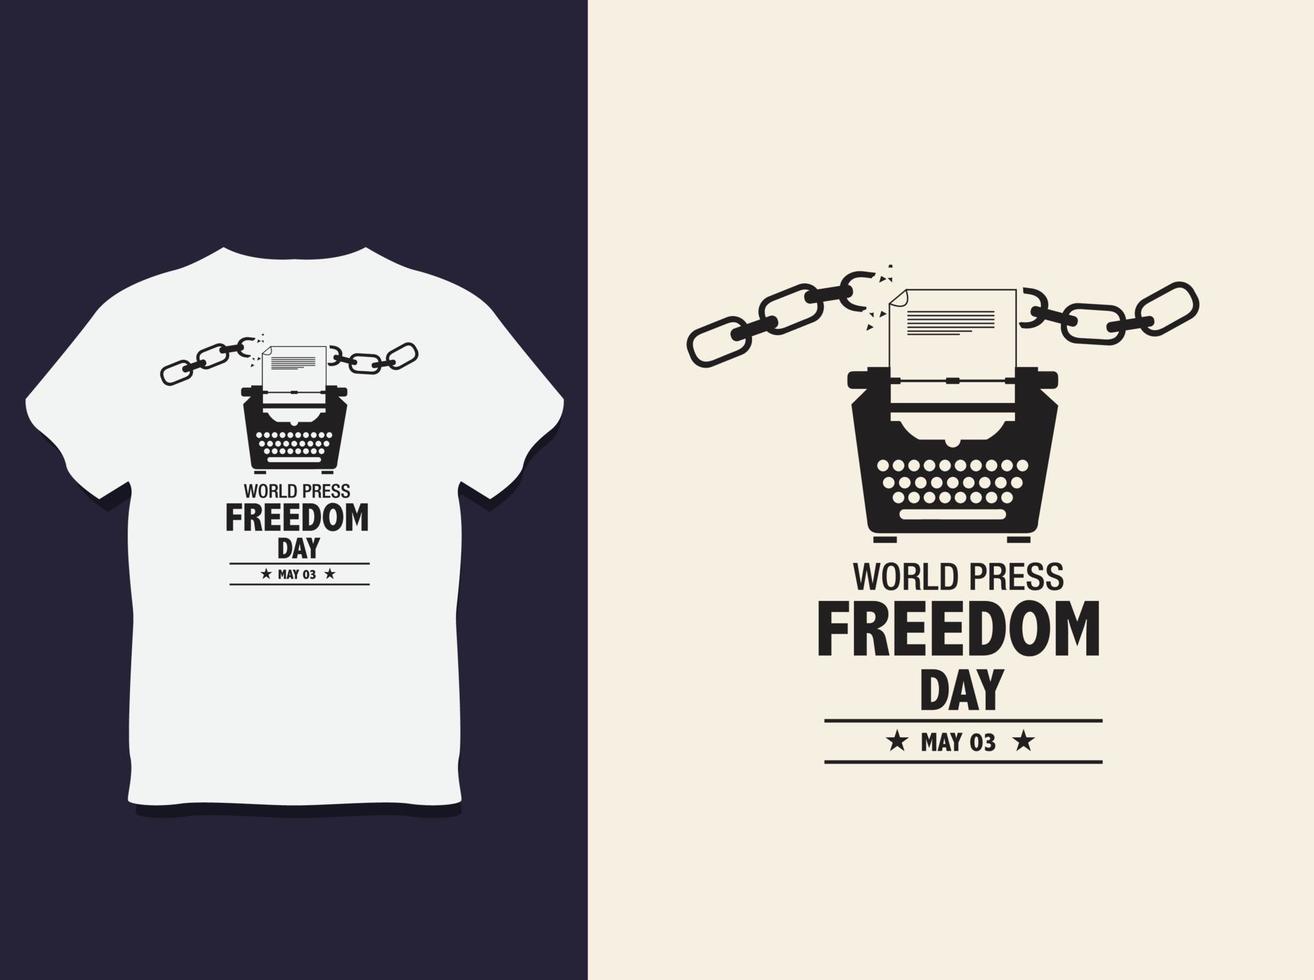 Typografie-T-Shirt-Design des Welttages der Pressefreiheit mit Vektor